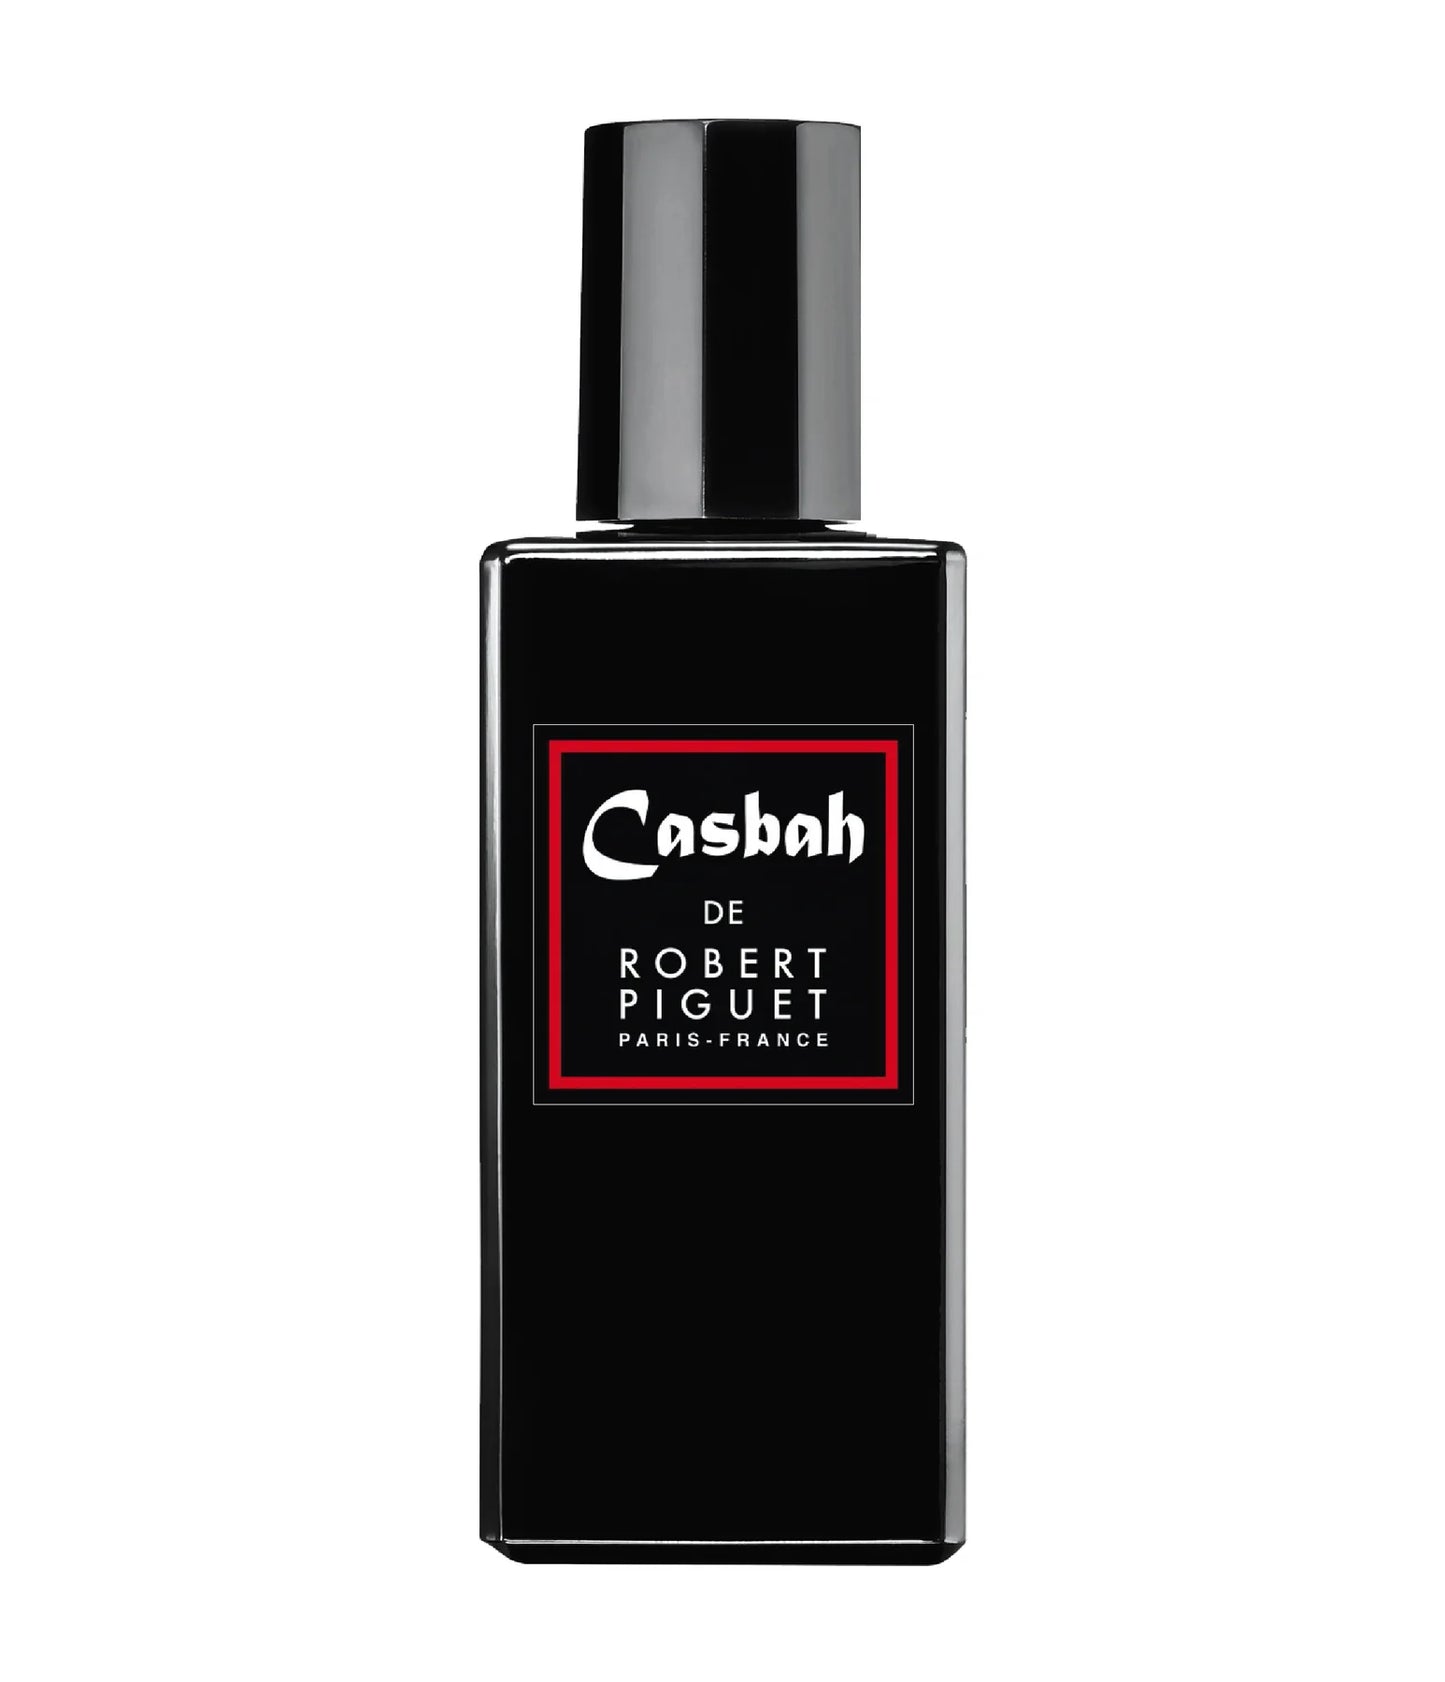 Casbah Eau De Parfum